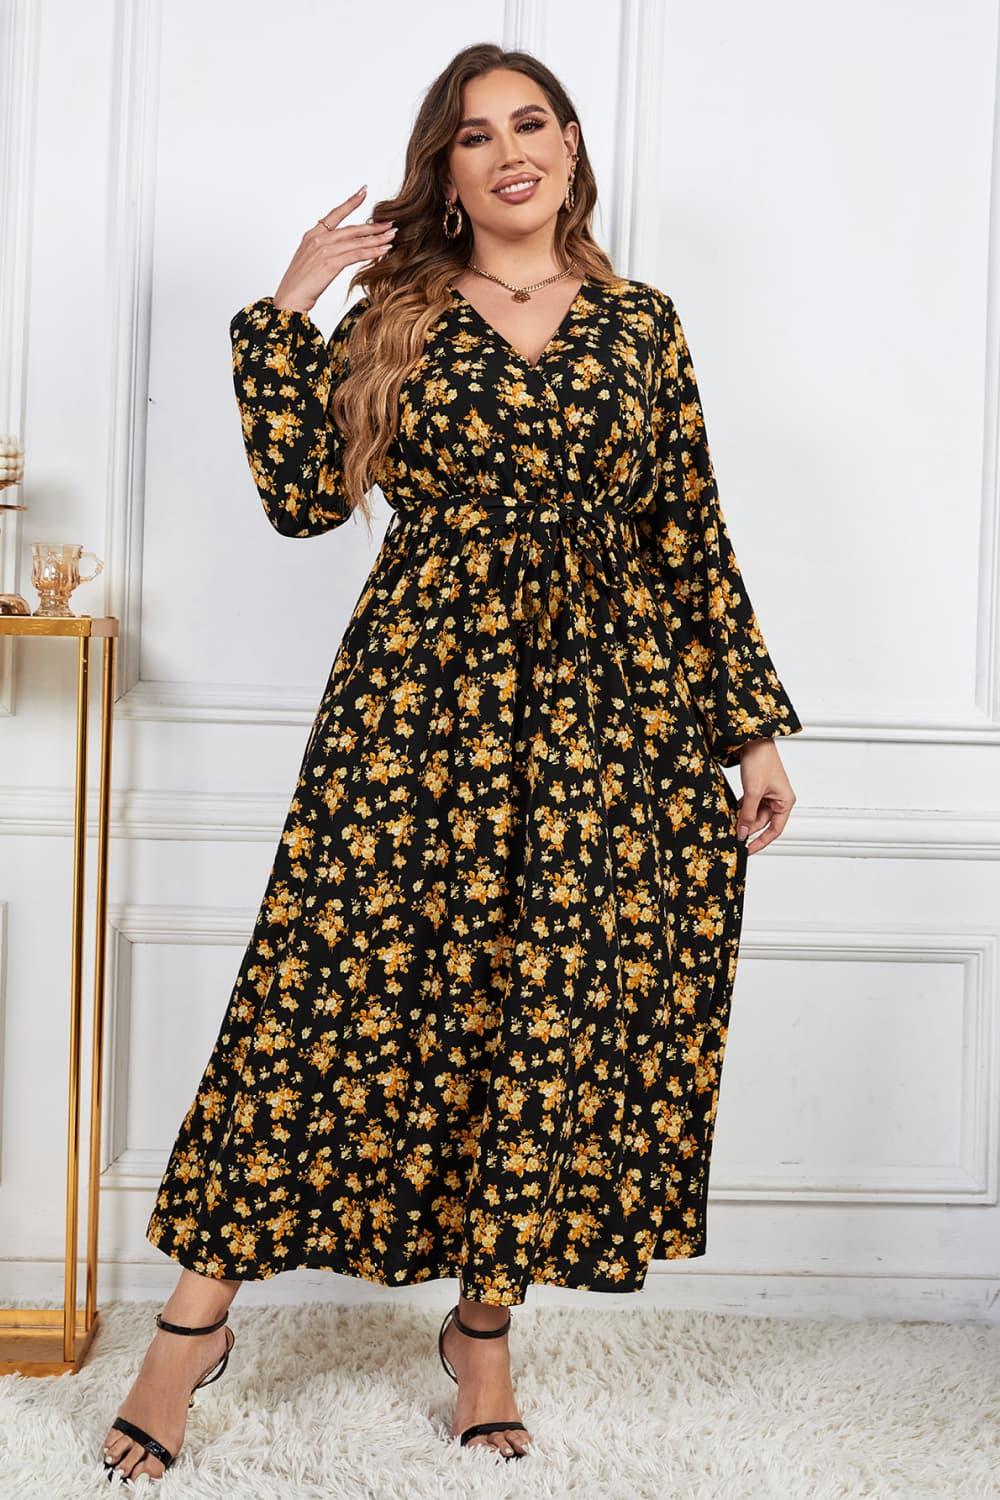 Melo Apparel Plus Size Floral Surplice Neck Long Sleeve Dress - Lucianne Boutique